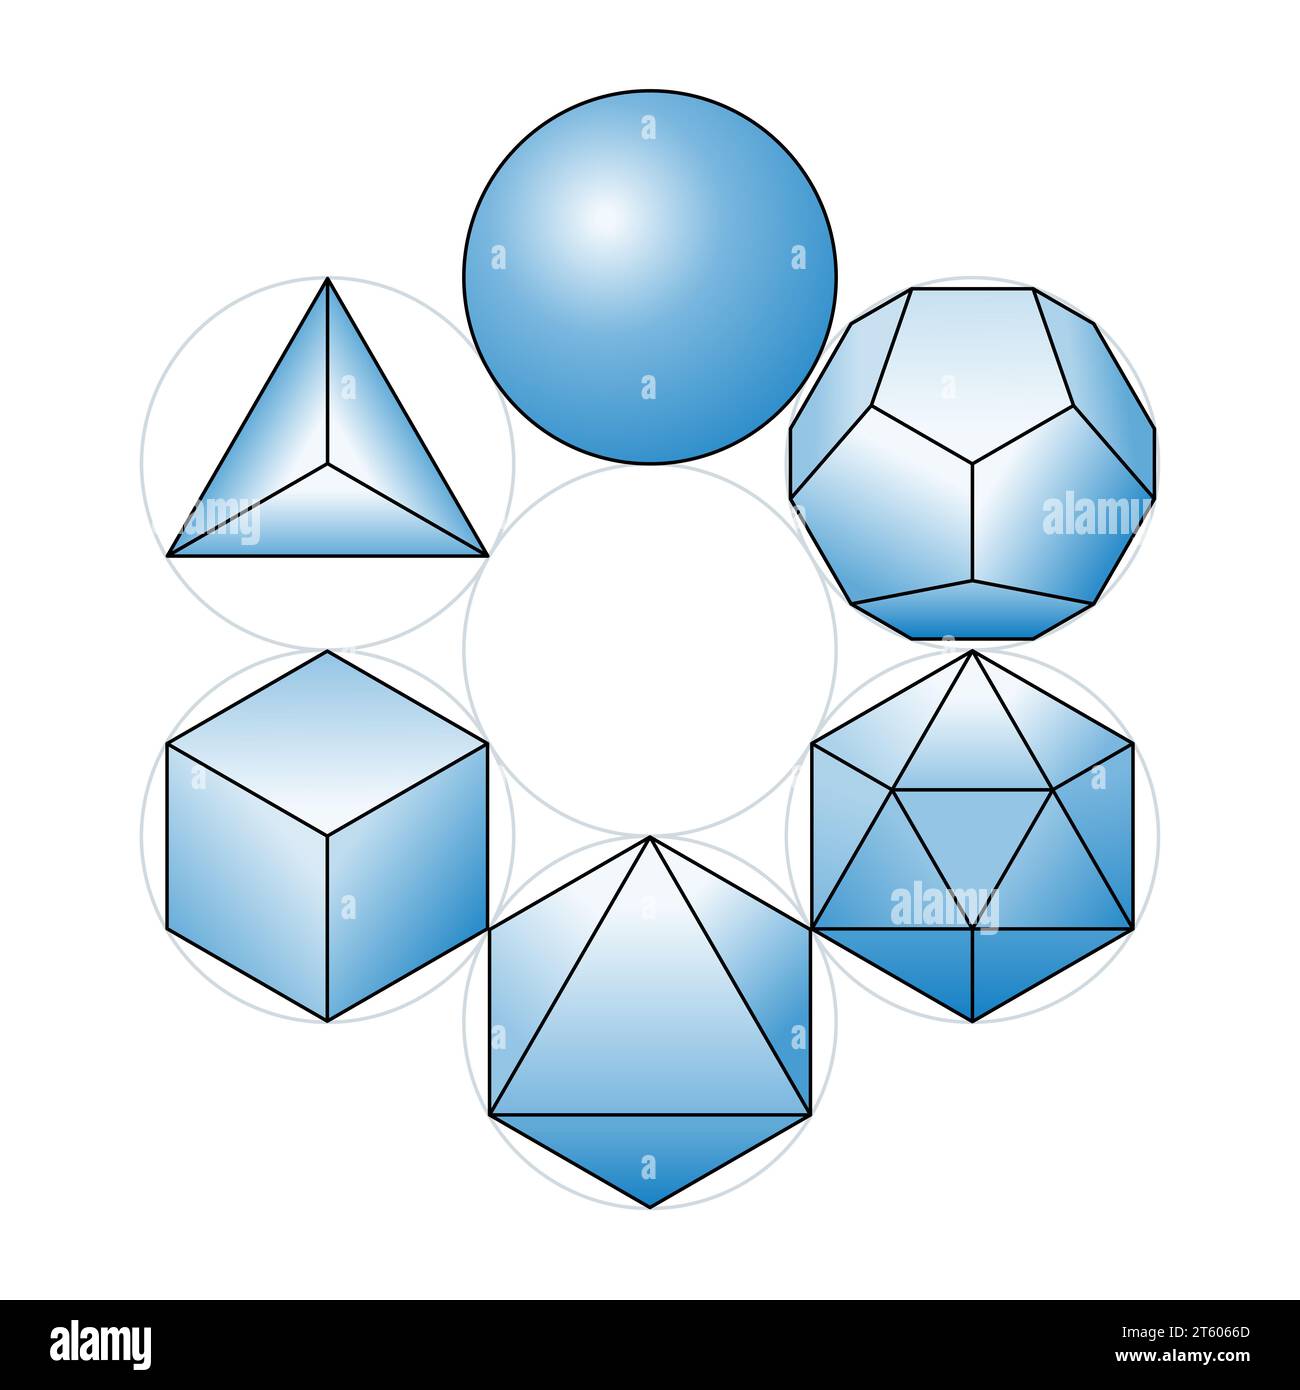 Sphère avec les solides de Platon placés en cercles, tous disposés autour d'un septième cercle. Quatre éléments, éther et vide. Banque D'Images